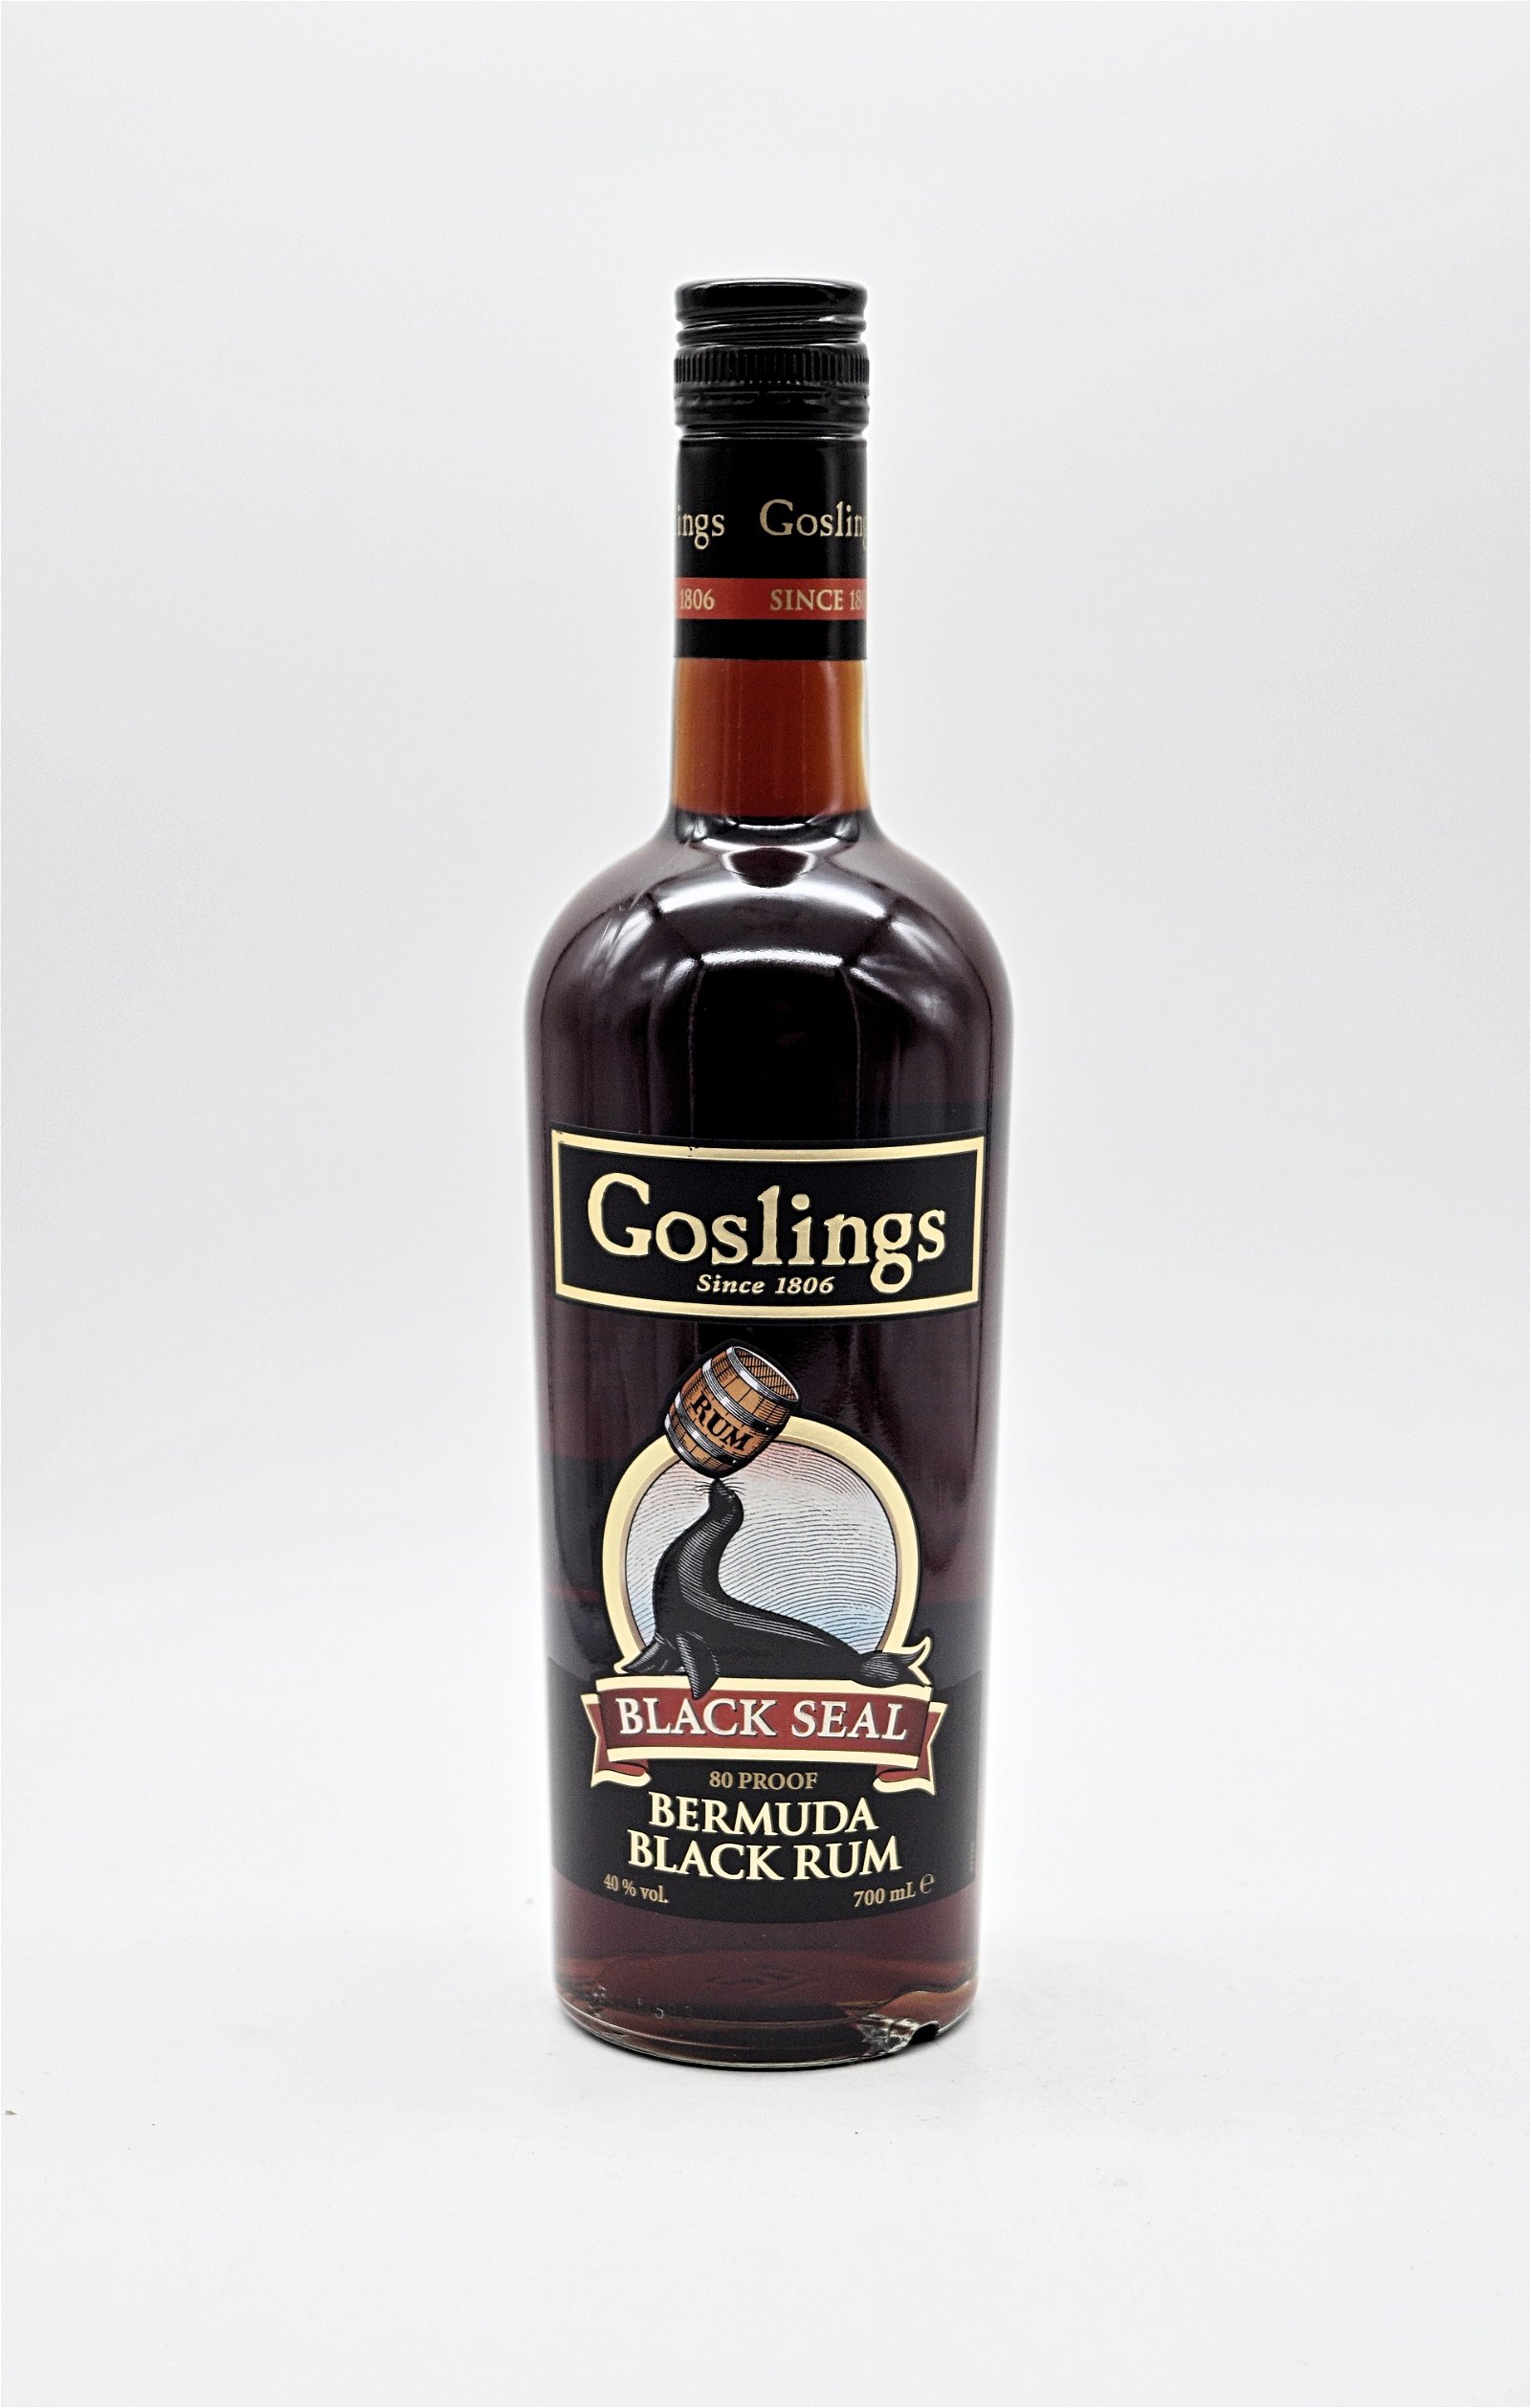 Goslings Black Seal Bermuda Black Rum 80 Proof